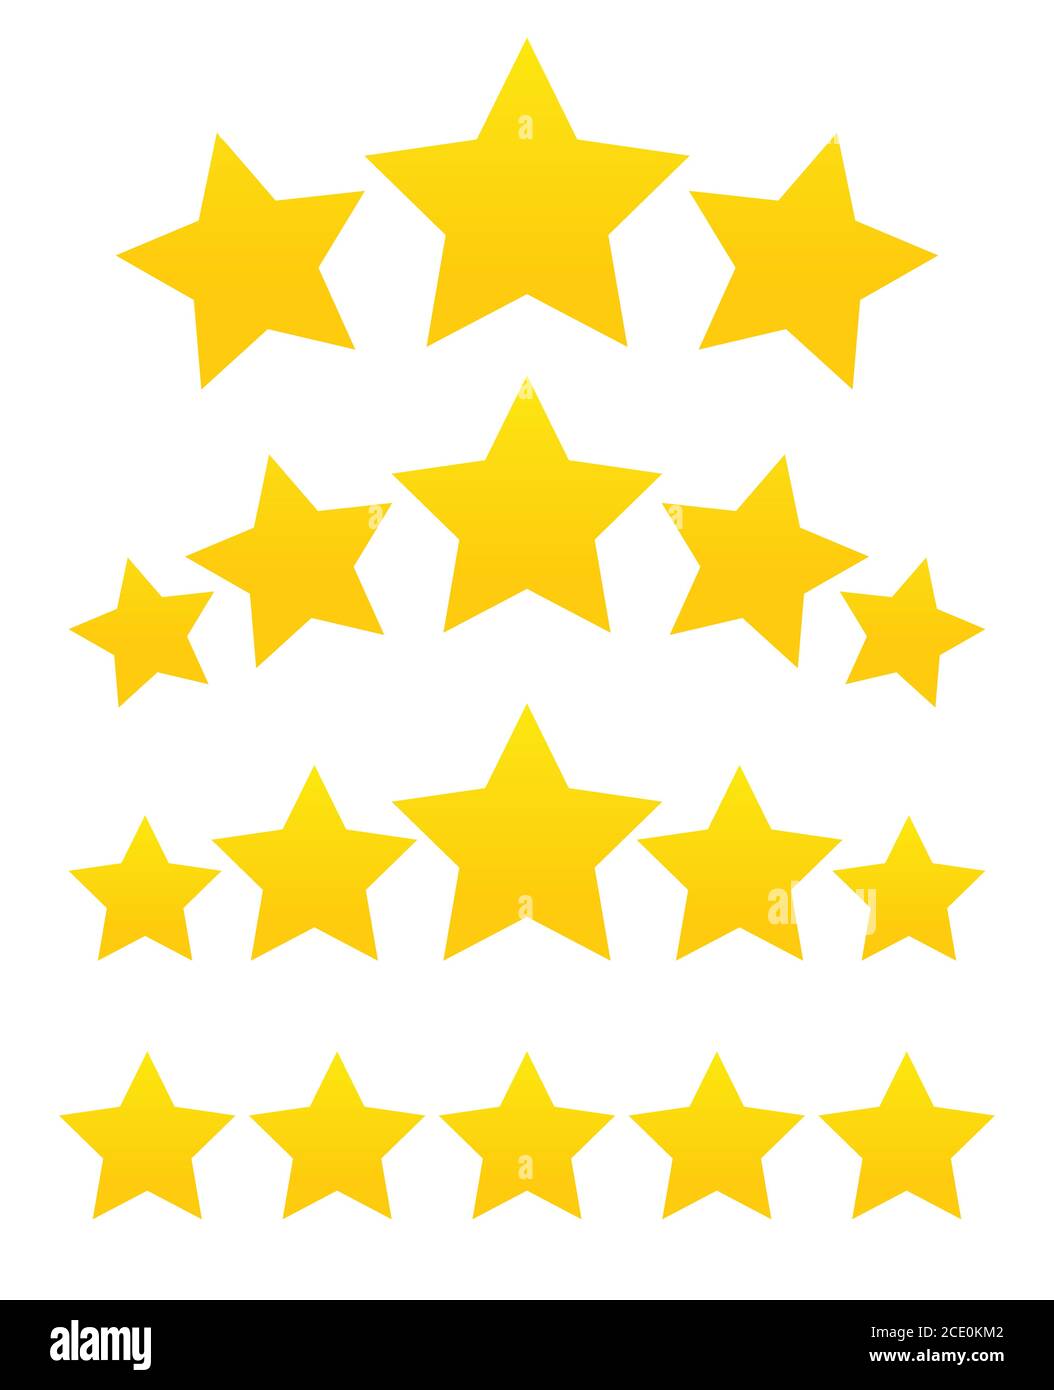 Fünf Sterne Kunde Produkt Rating review Flachbild Symbol für Anwendungen und Webseiten Stock Vektor